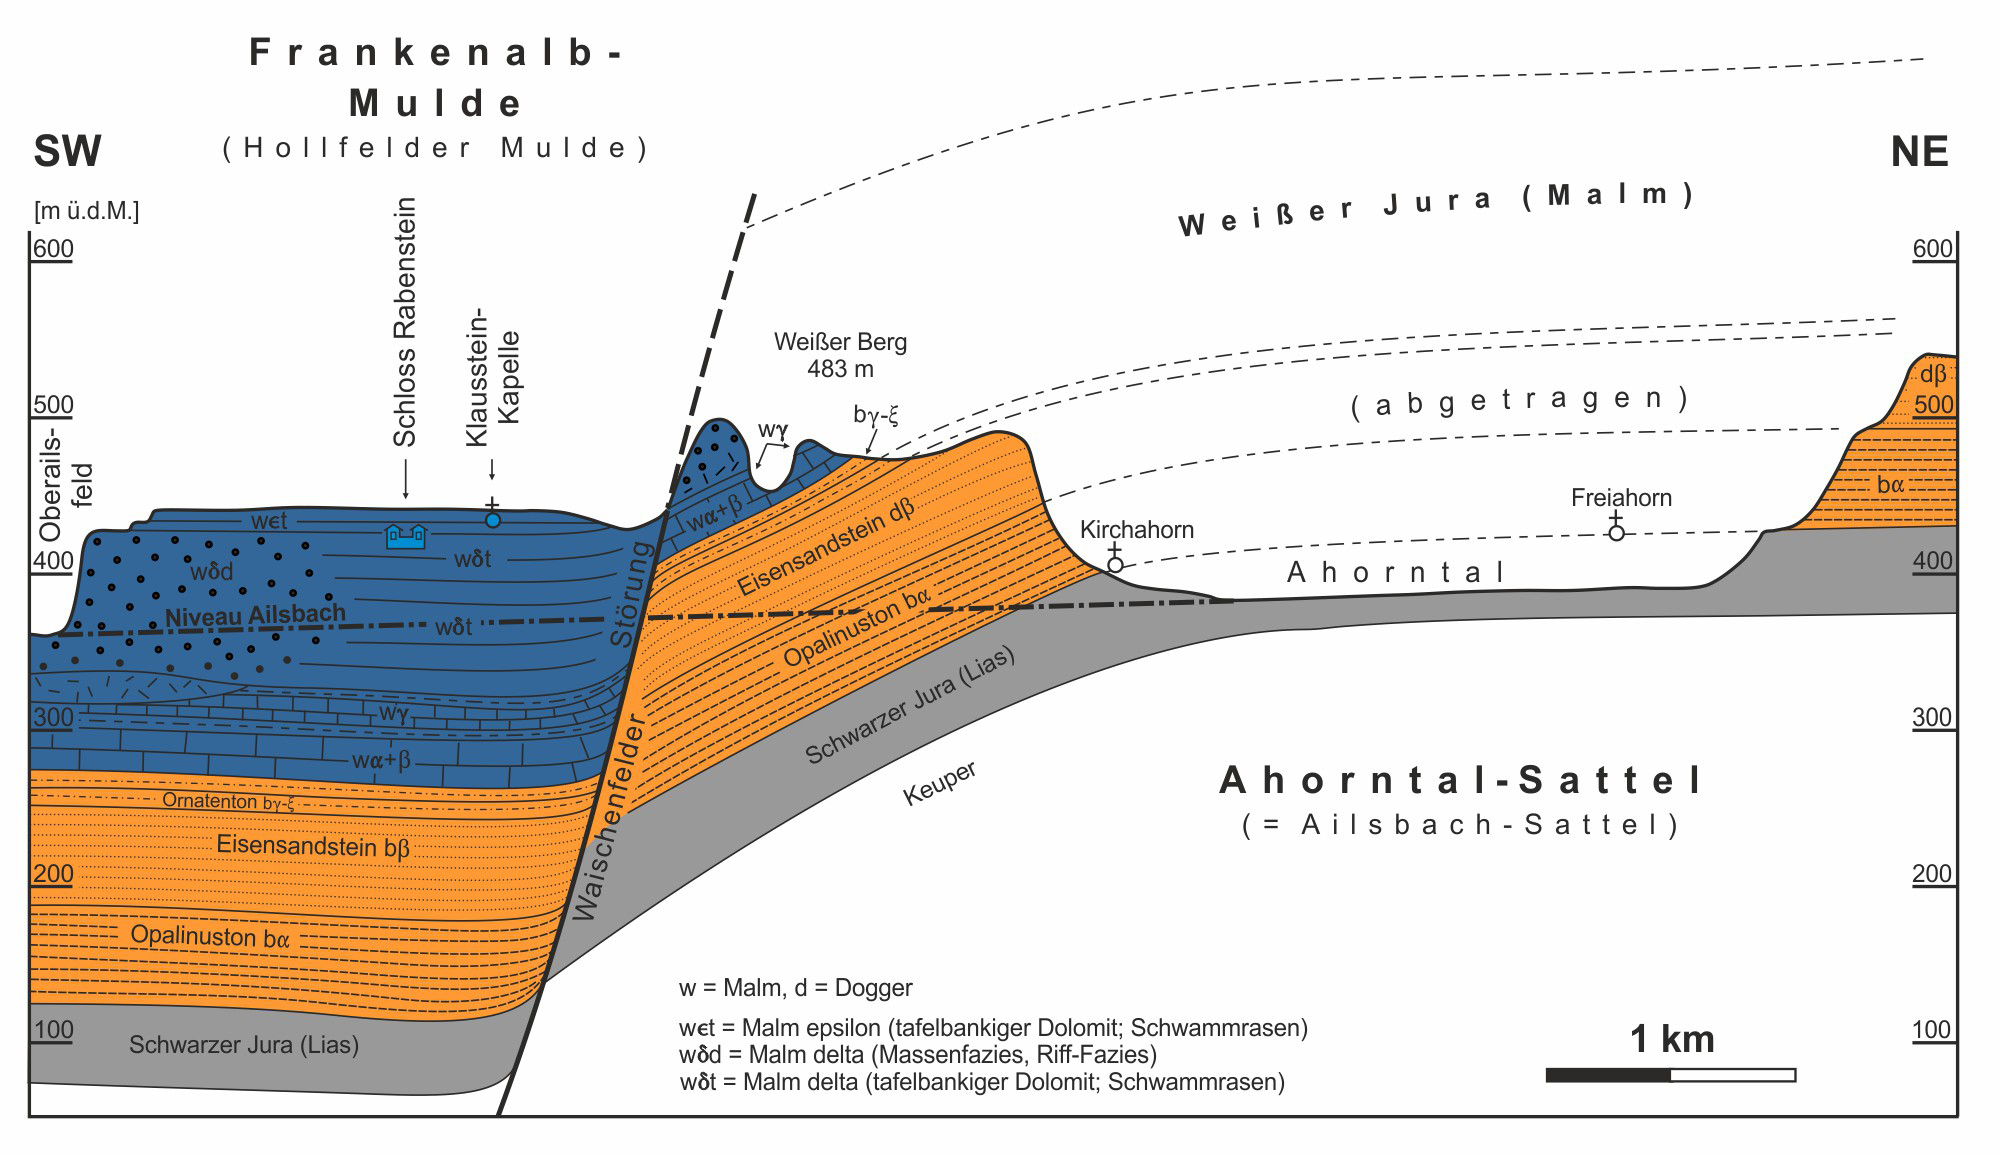 Abb. 8: Geologisches Profil durch die östliche Frankenalb-Mulde (Hollfelder Graben) und den Ahorntal-Sattel (Ailsbach-Sattel) über die Waischenfelder Störung (als Teilelement der Hollfelder Störung)